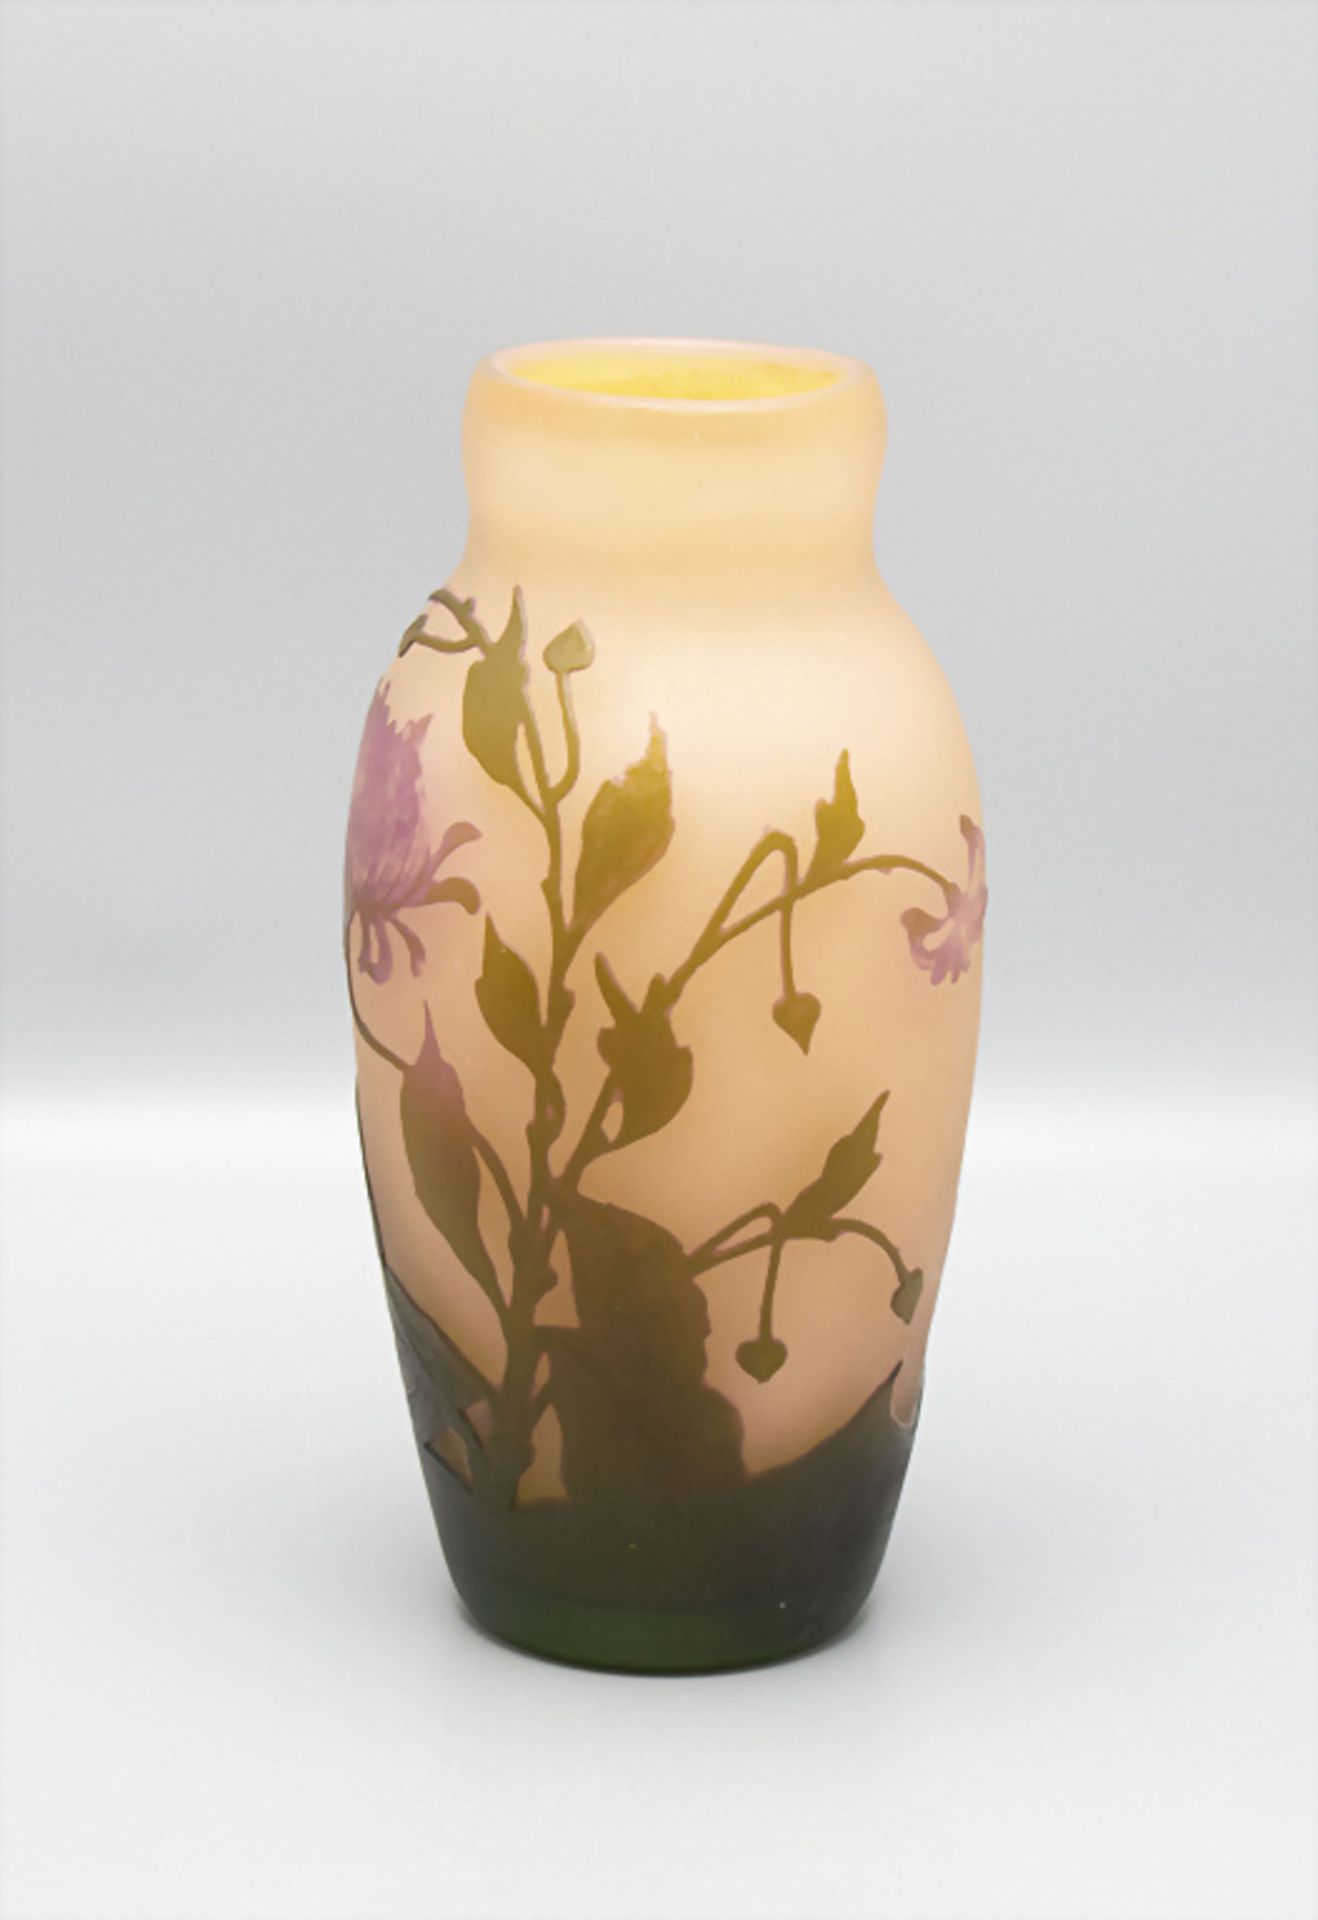 Jugendstil Vase, Arsall, Vereinigte Lausitzer Glaswerke AG, Weisswasser, 1921 - Image 2 of 6